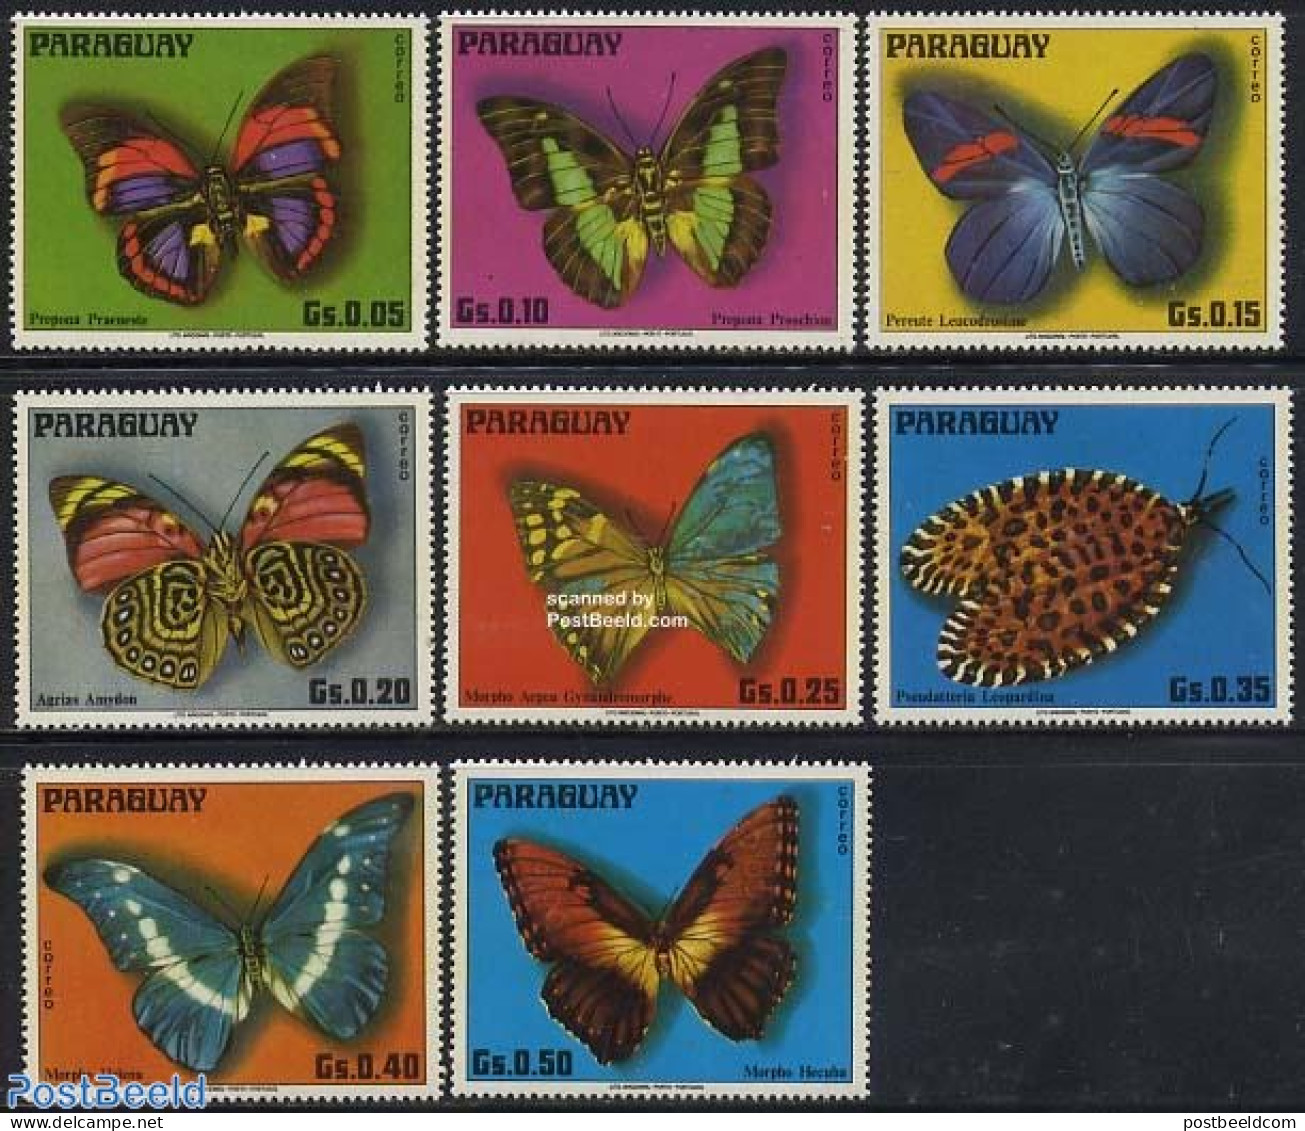 Paraguay 1975 Butterflies 8v, Mint NH, Nature - Butterflies - Paraguay